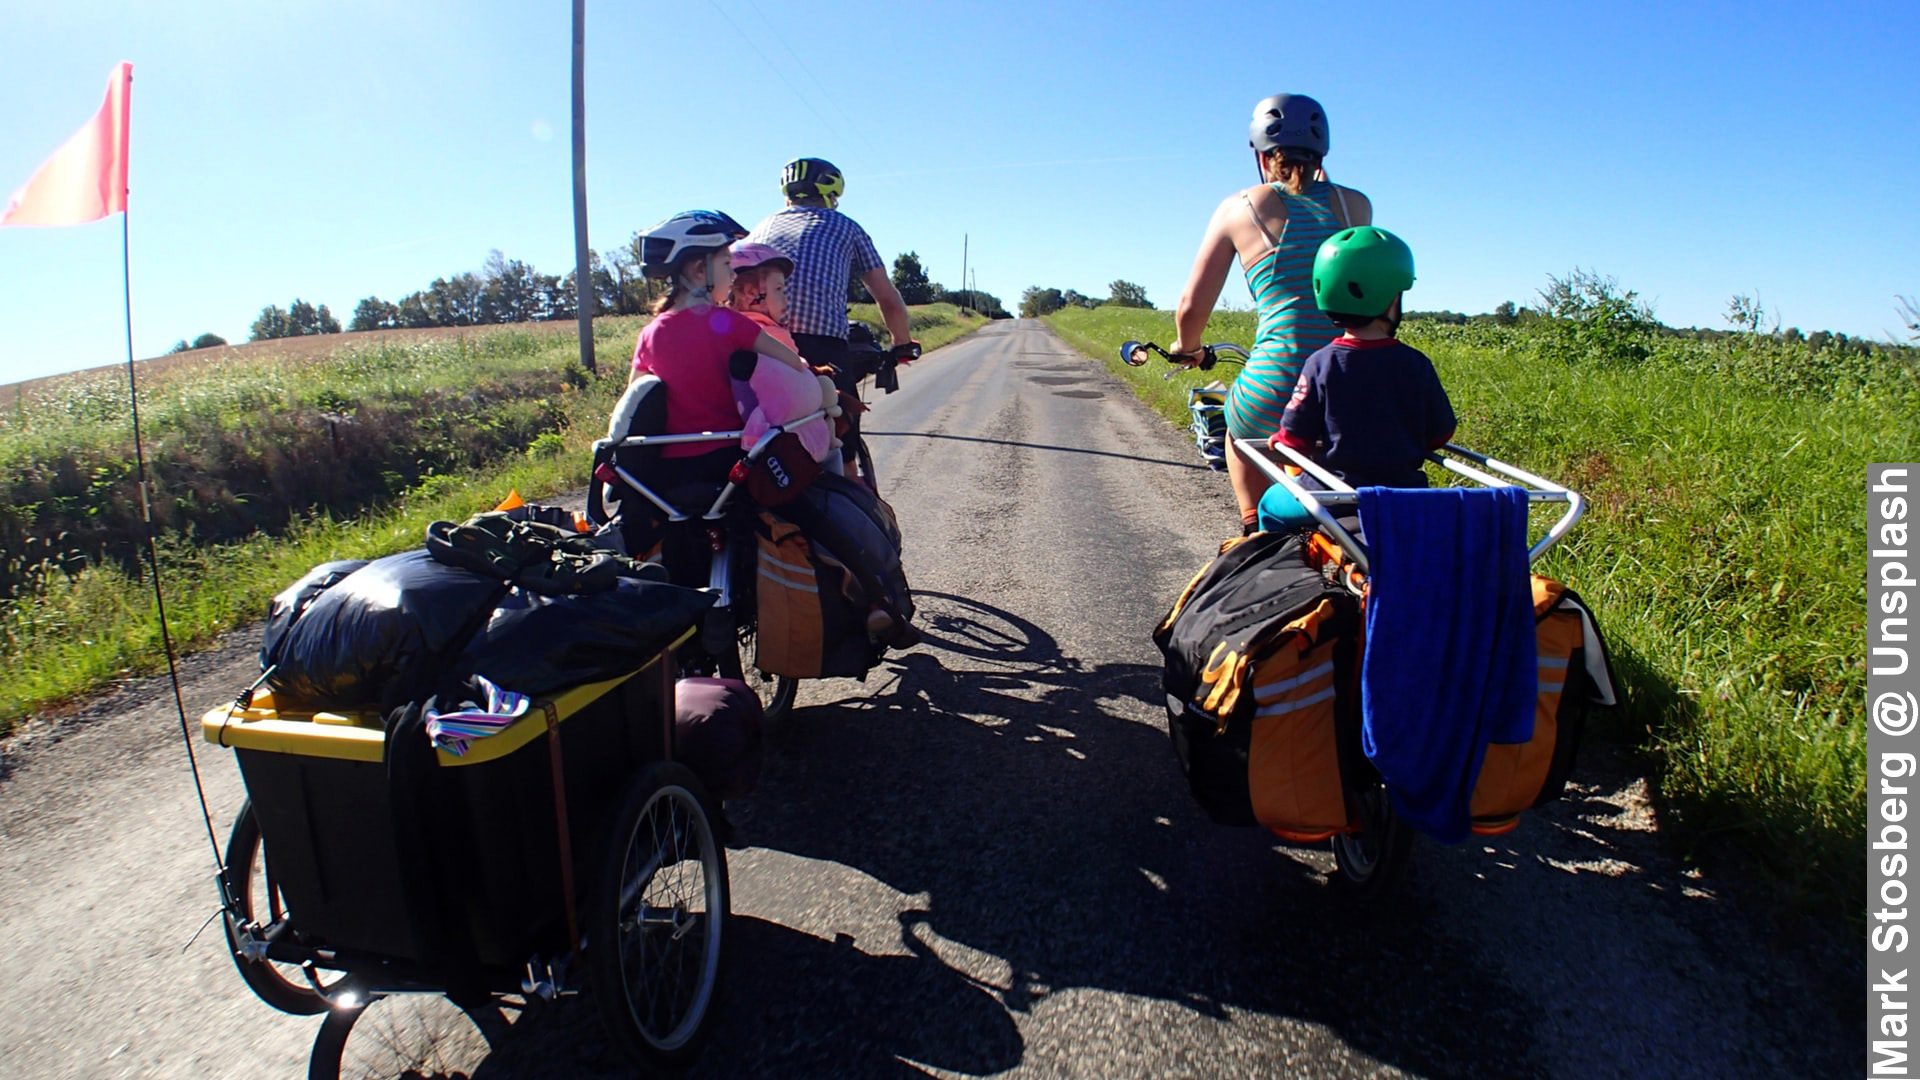 Family Road Trip on Bikes